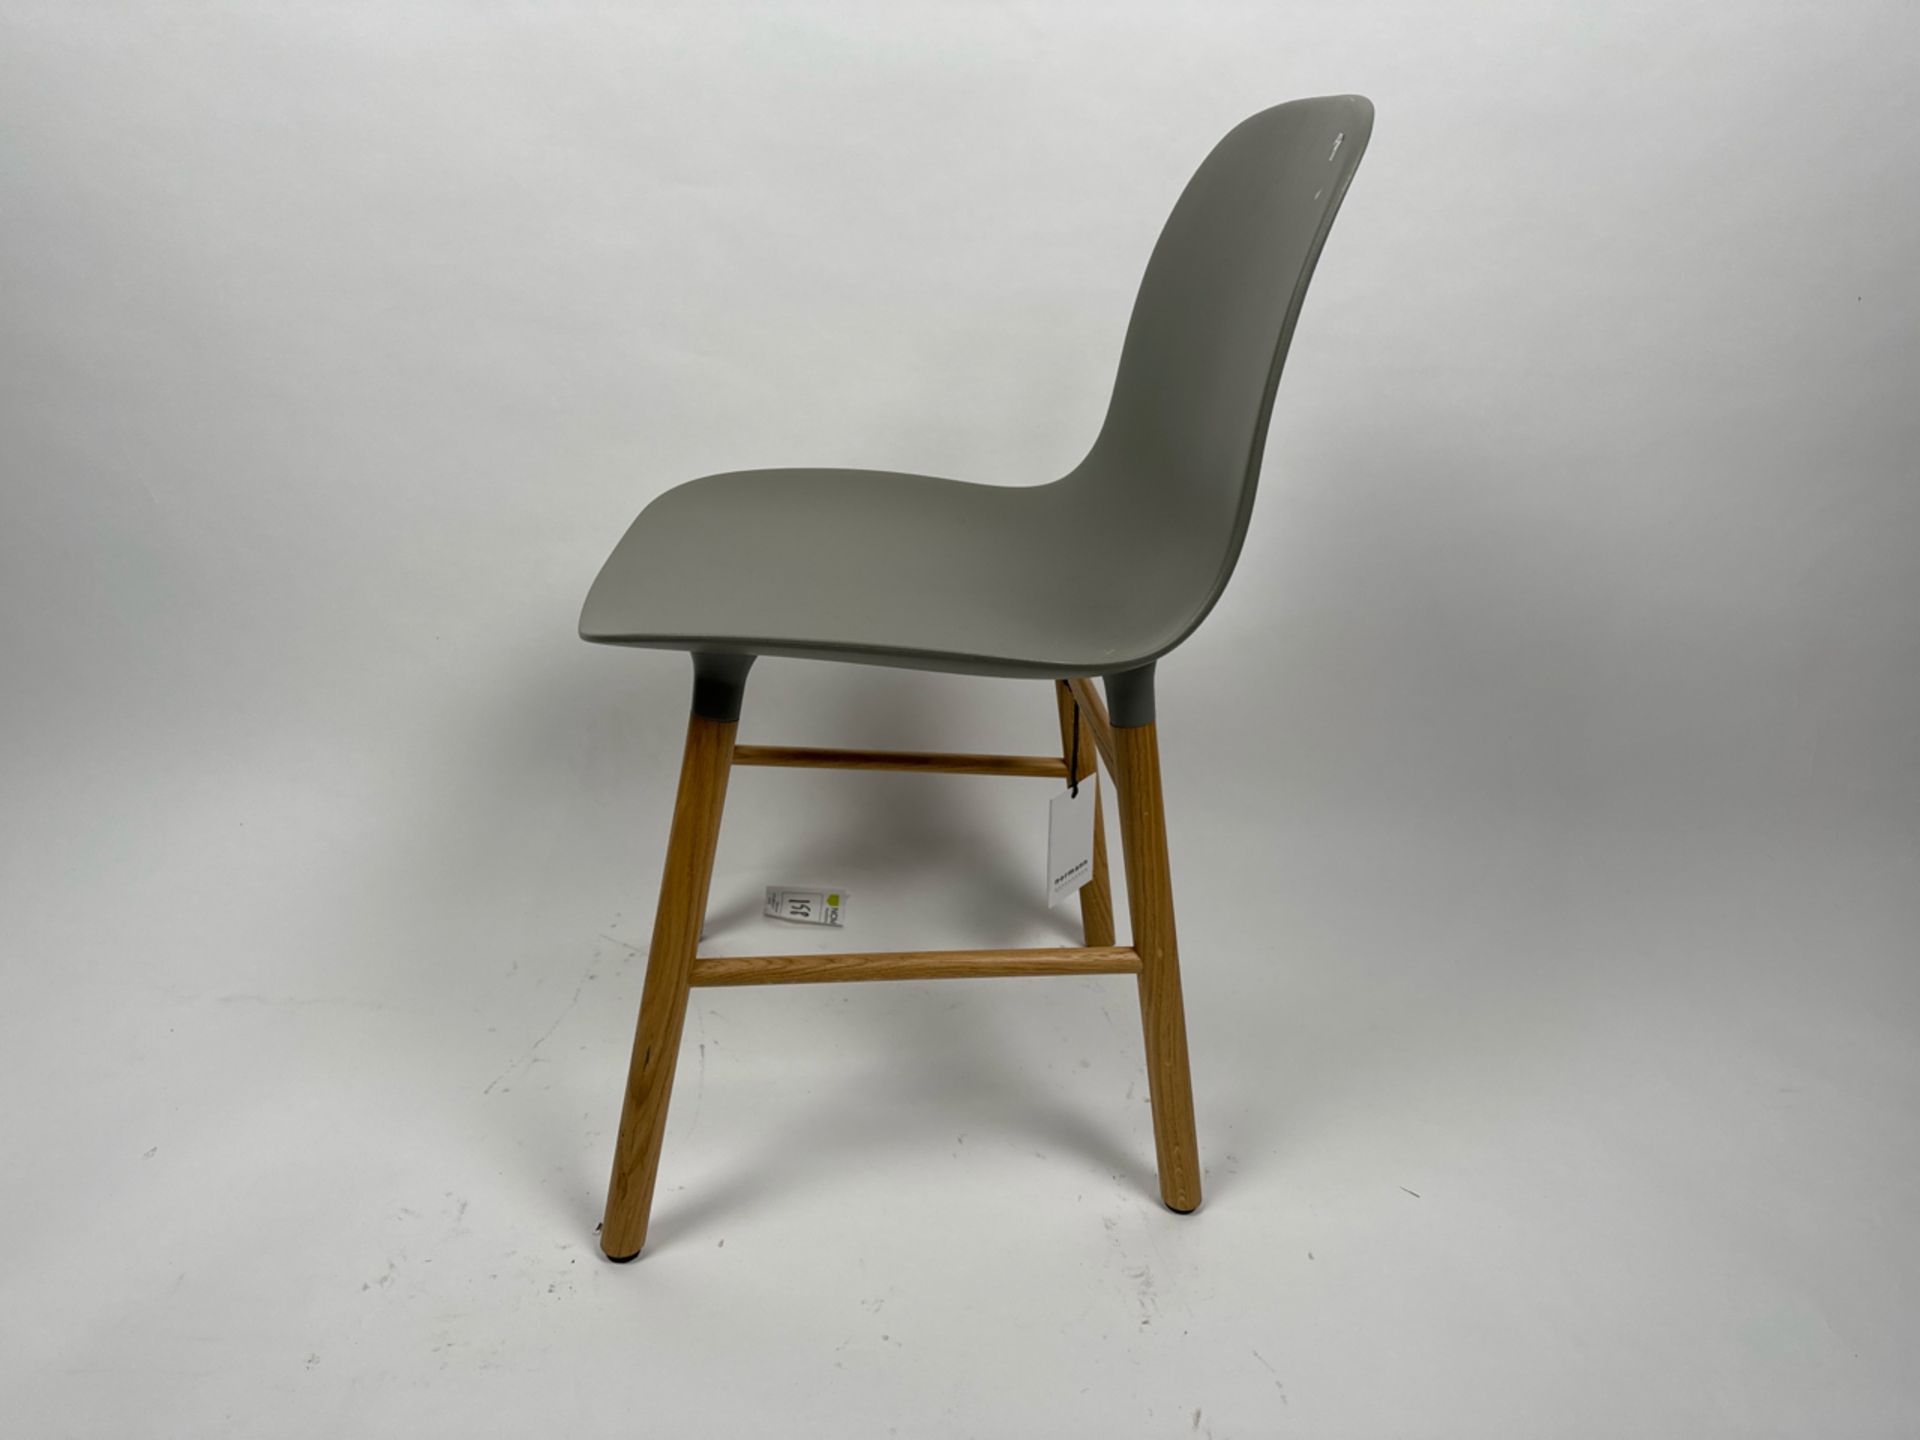 Norman Copenhagen Form Chair - Image 3 of 3